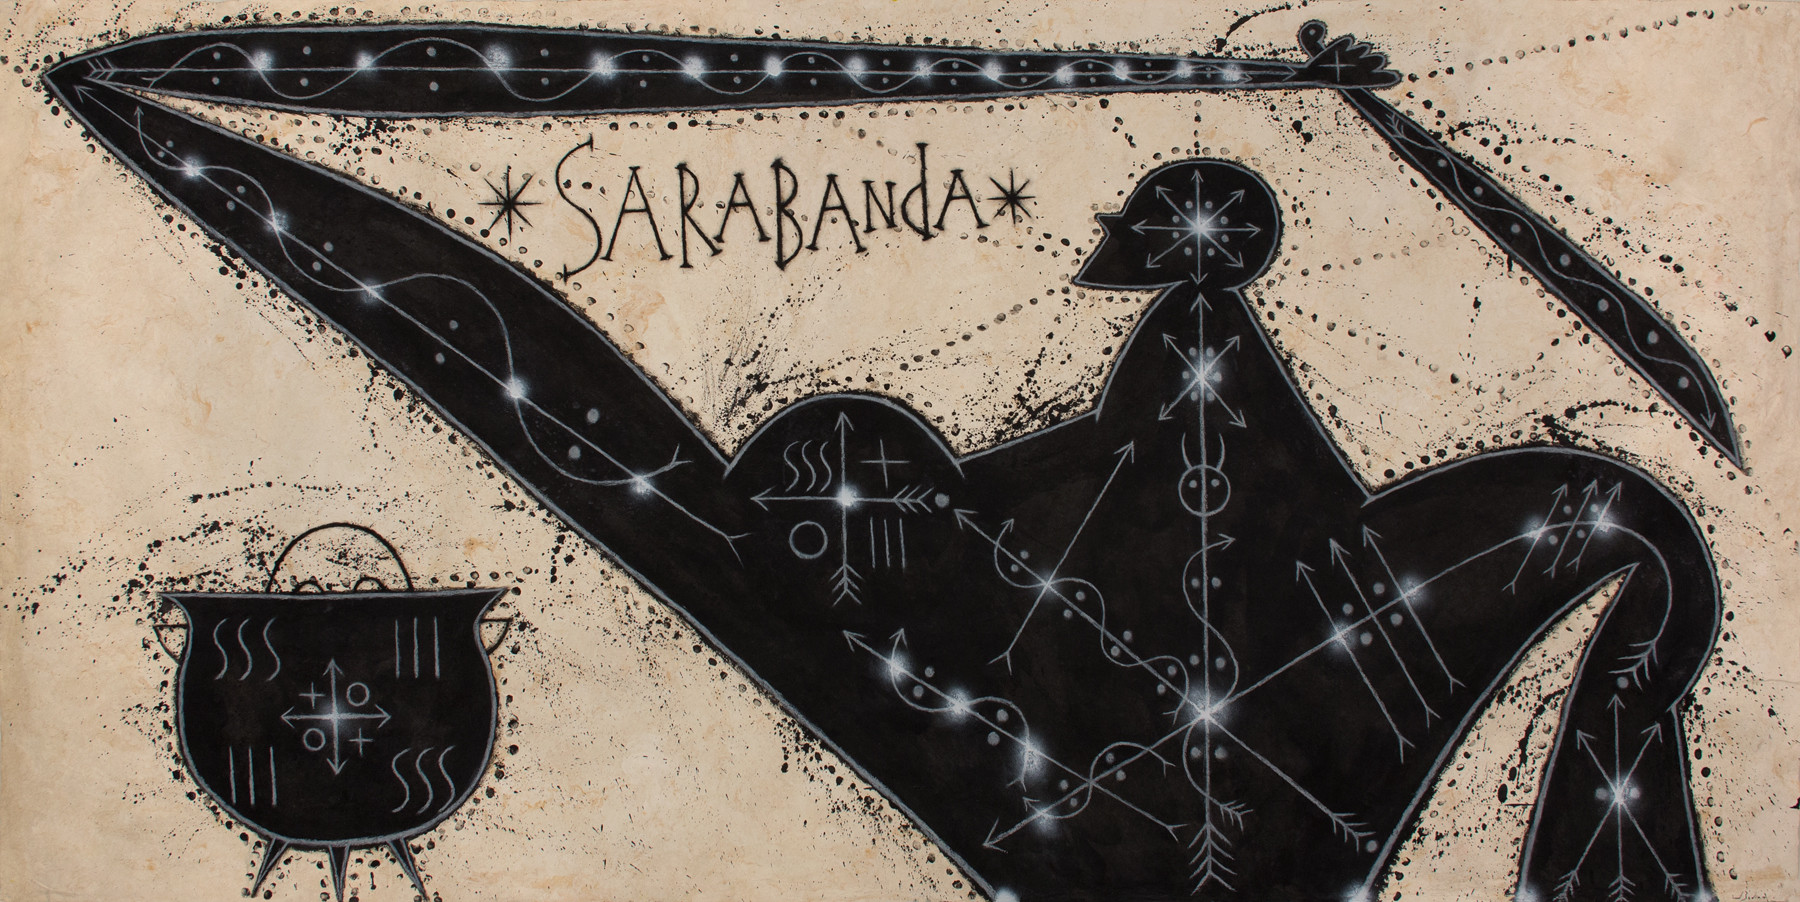 Хосе Бедия (José Bedia, кубино-американский художник), Sarabanda. Имя божества Сарабанда, возможно, происходит от&nbsp;двух слов из&nbsp;киконго: sála («работа») и&nbsp;bánda («священный, сакральный»). Источник: https://elsrcorchea.com/jose-bedia-sarabanda/